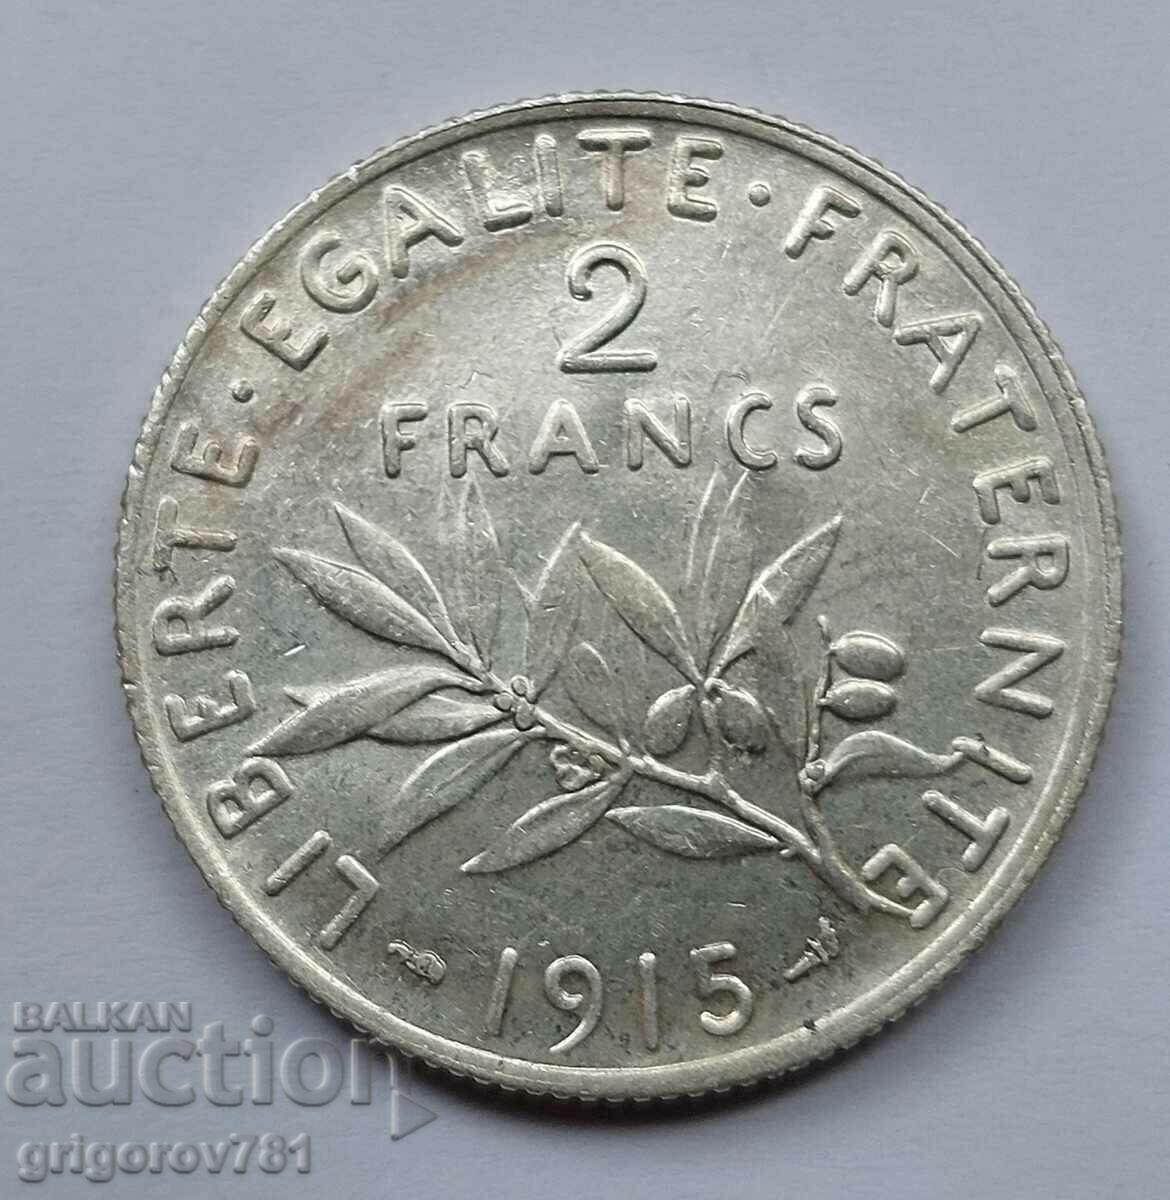 2 Franci Argint Franta 1915 - Moneda de argint #124